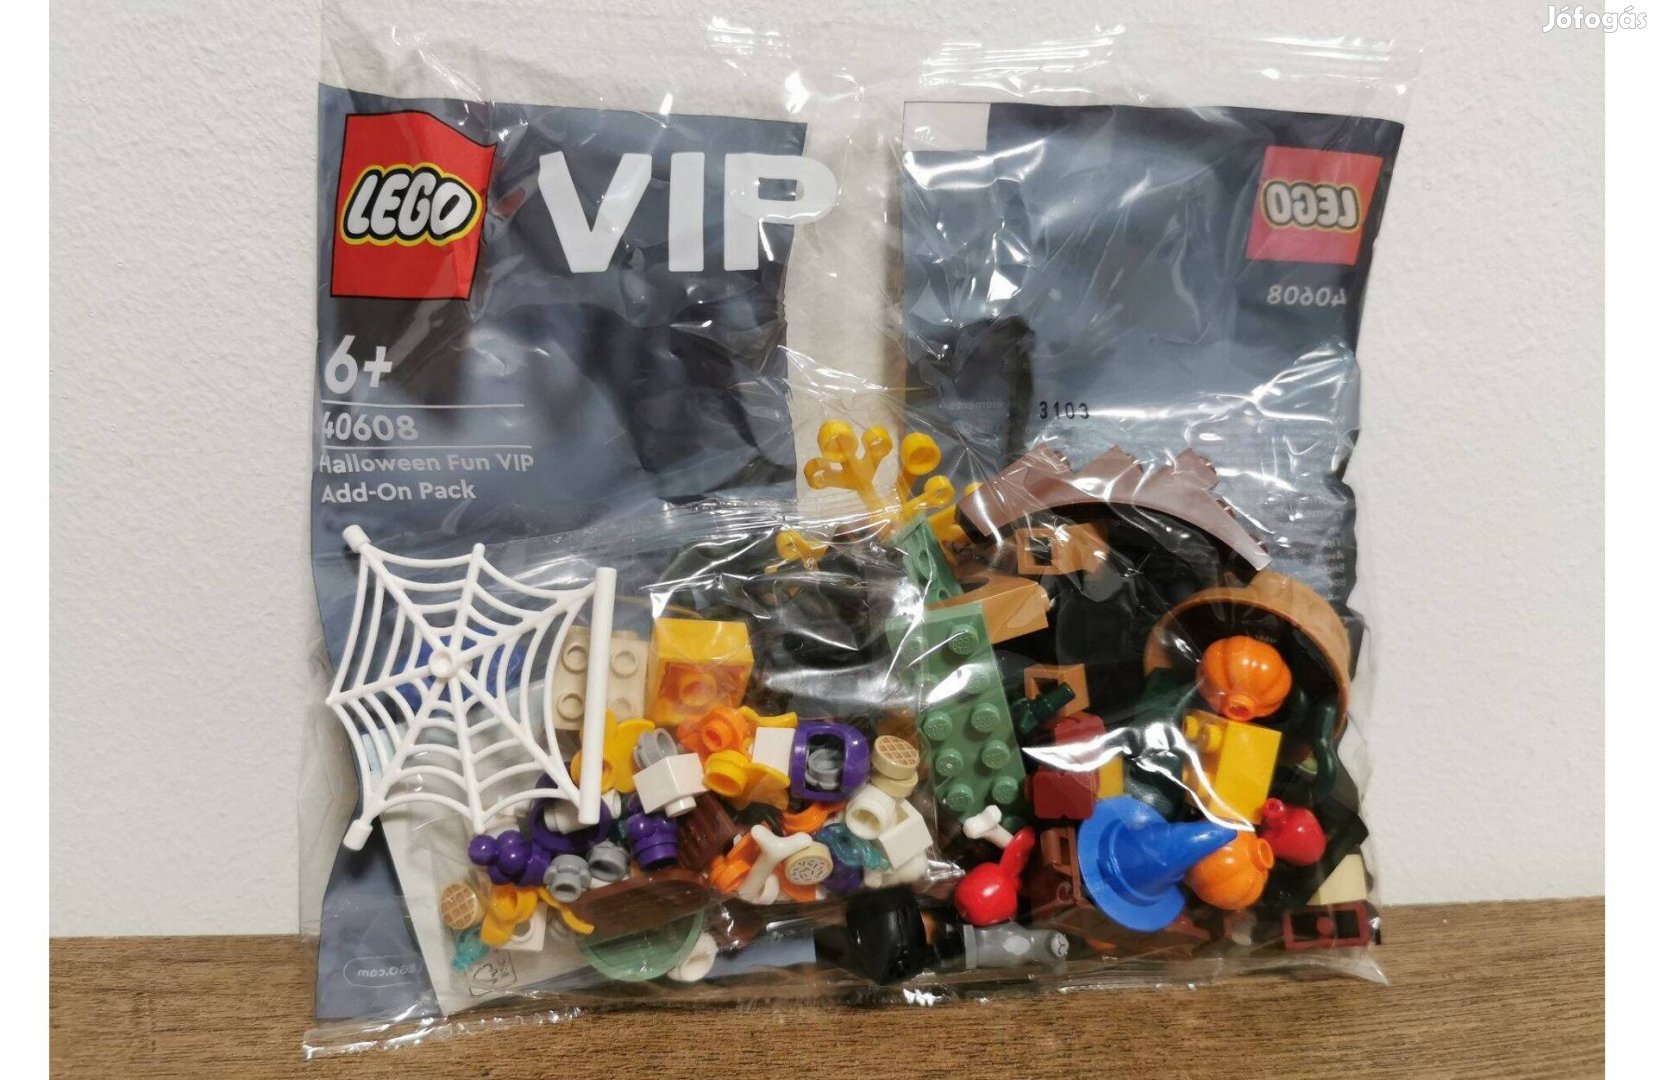 LEGO Halloweeni VIP kiegészítő csomag (40608)